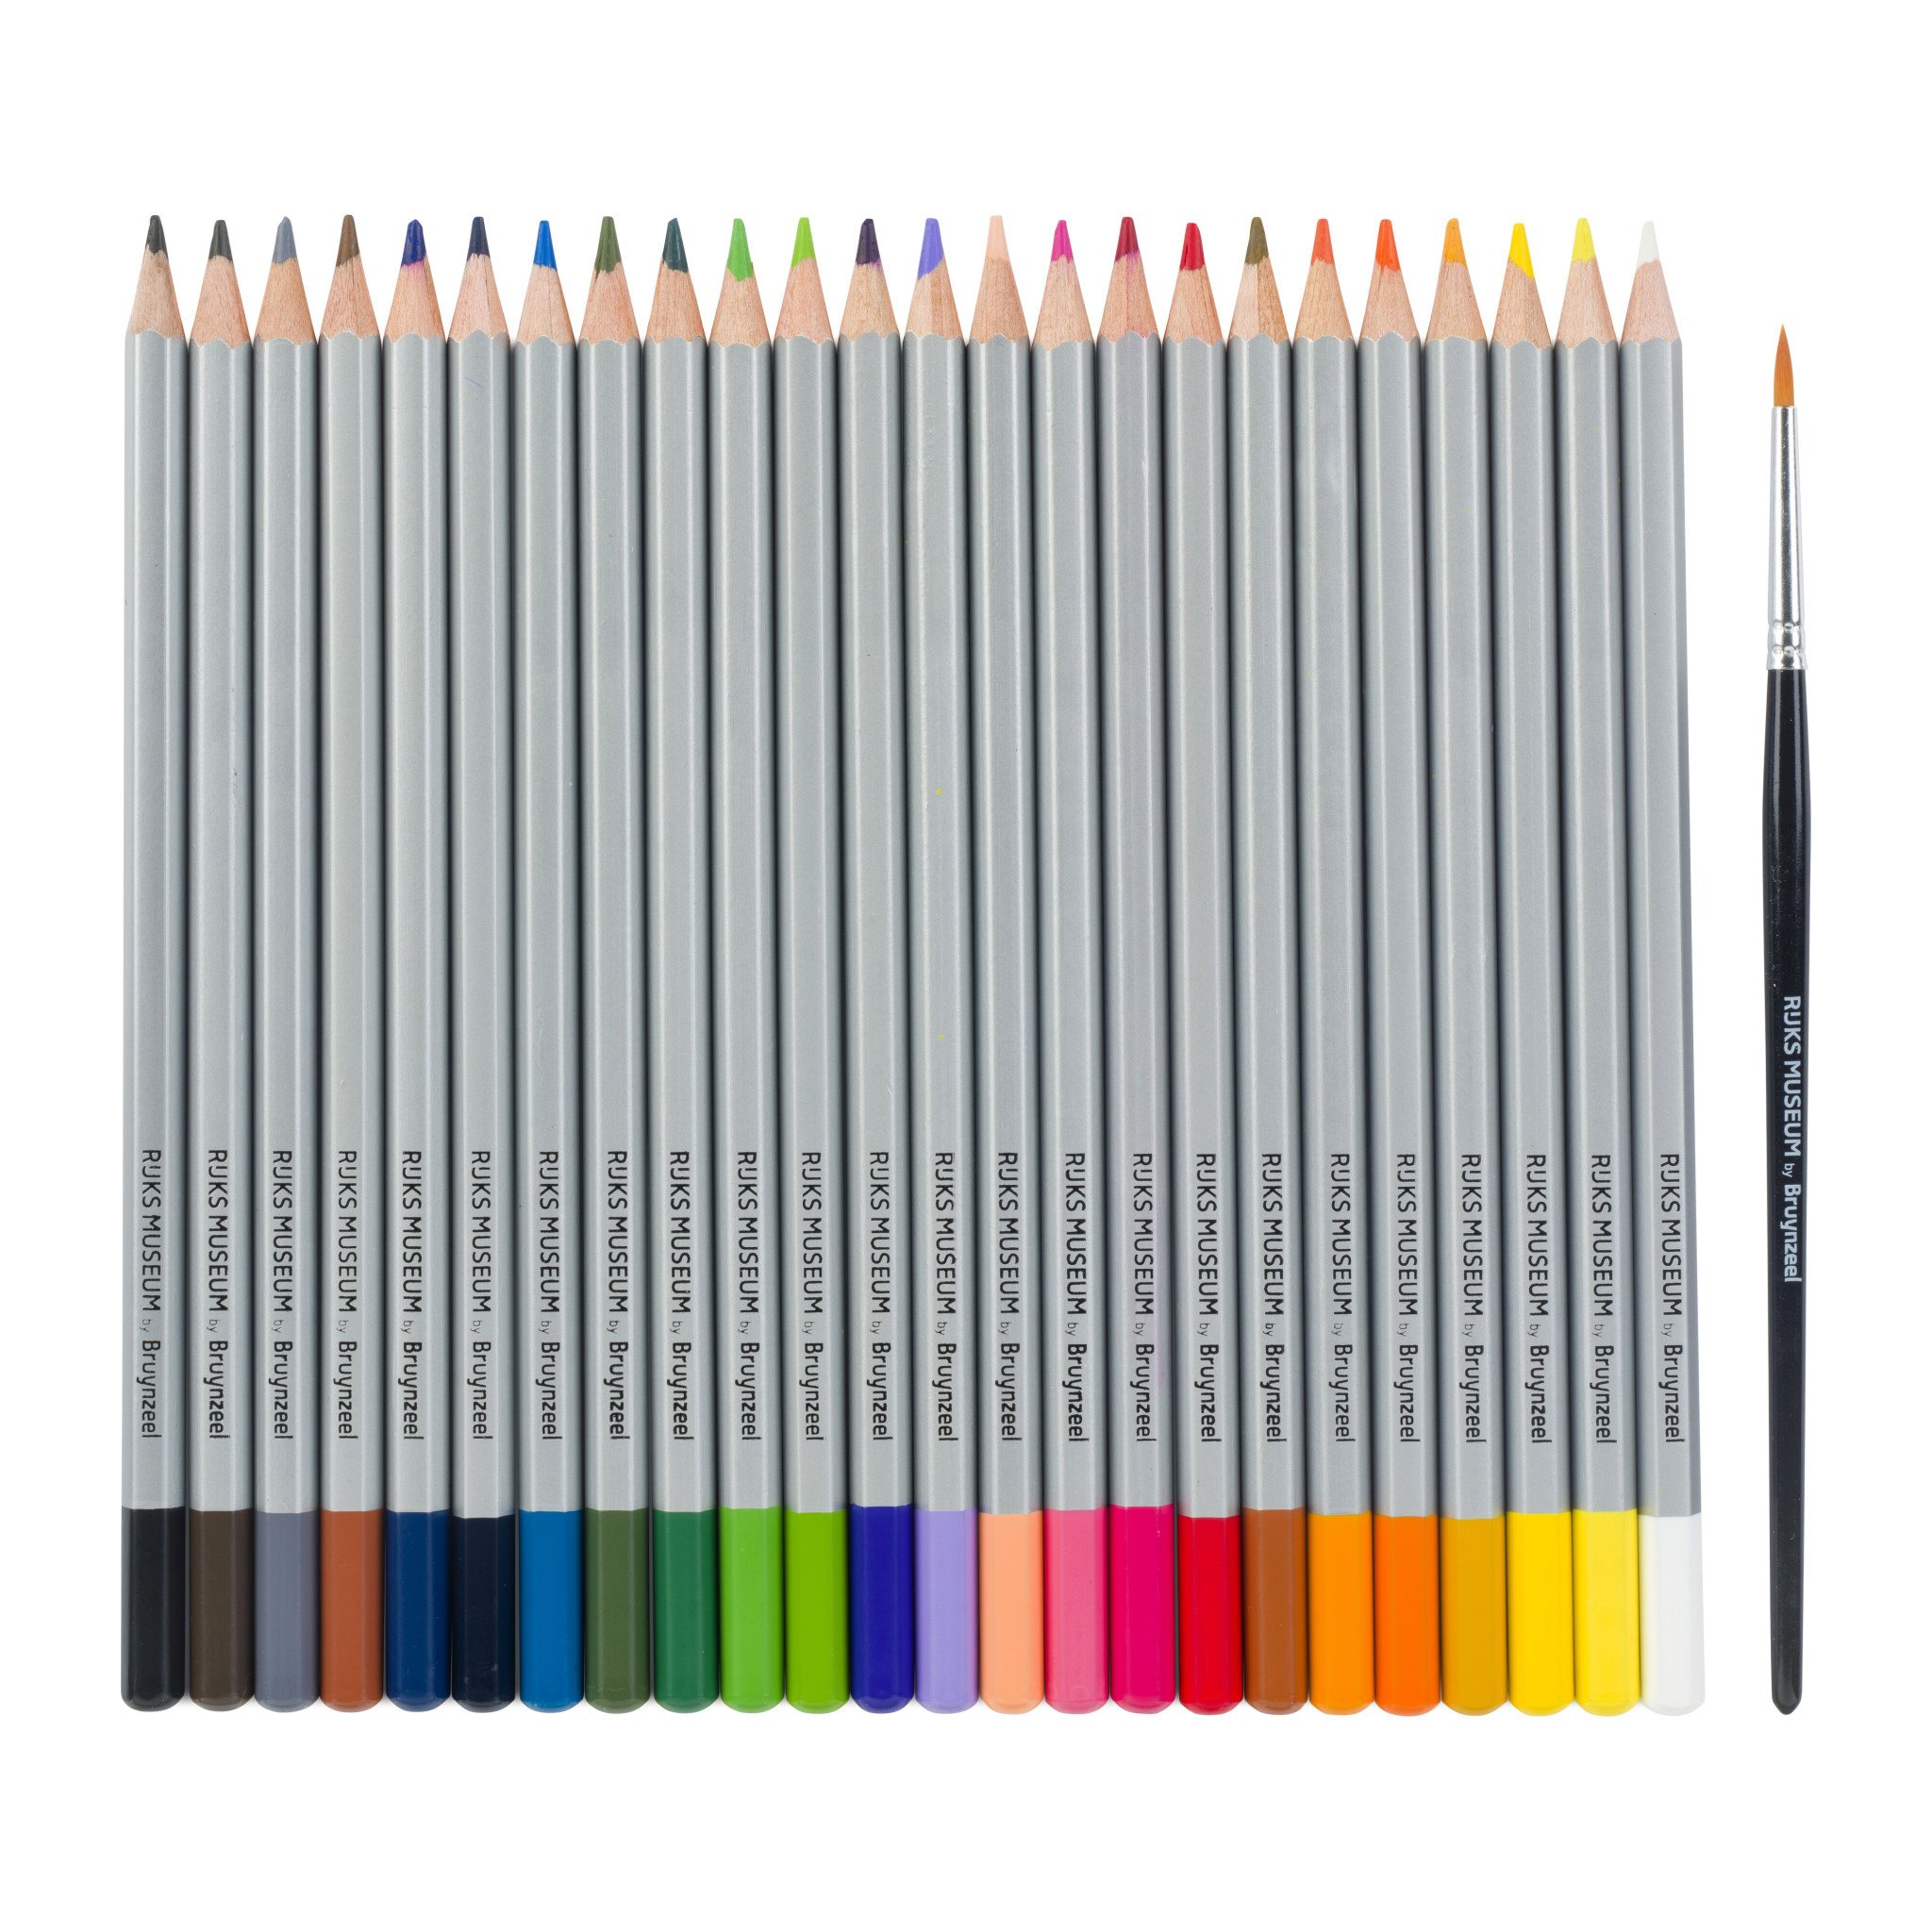 Ensemble de Crayons de couleur - multi couleurs - 24x pièces